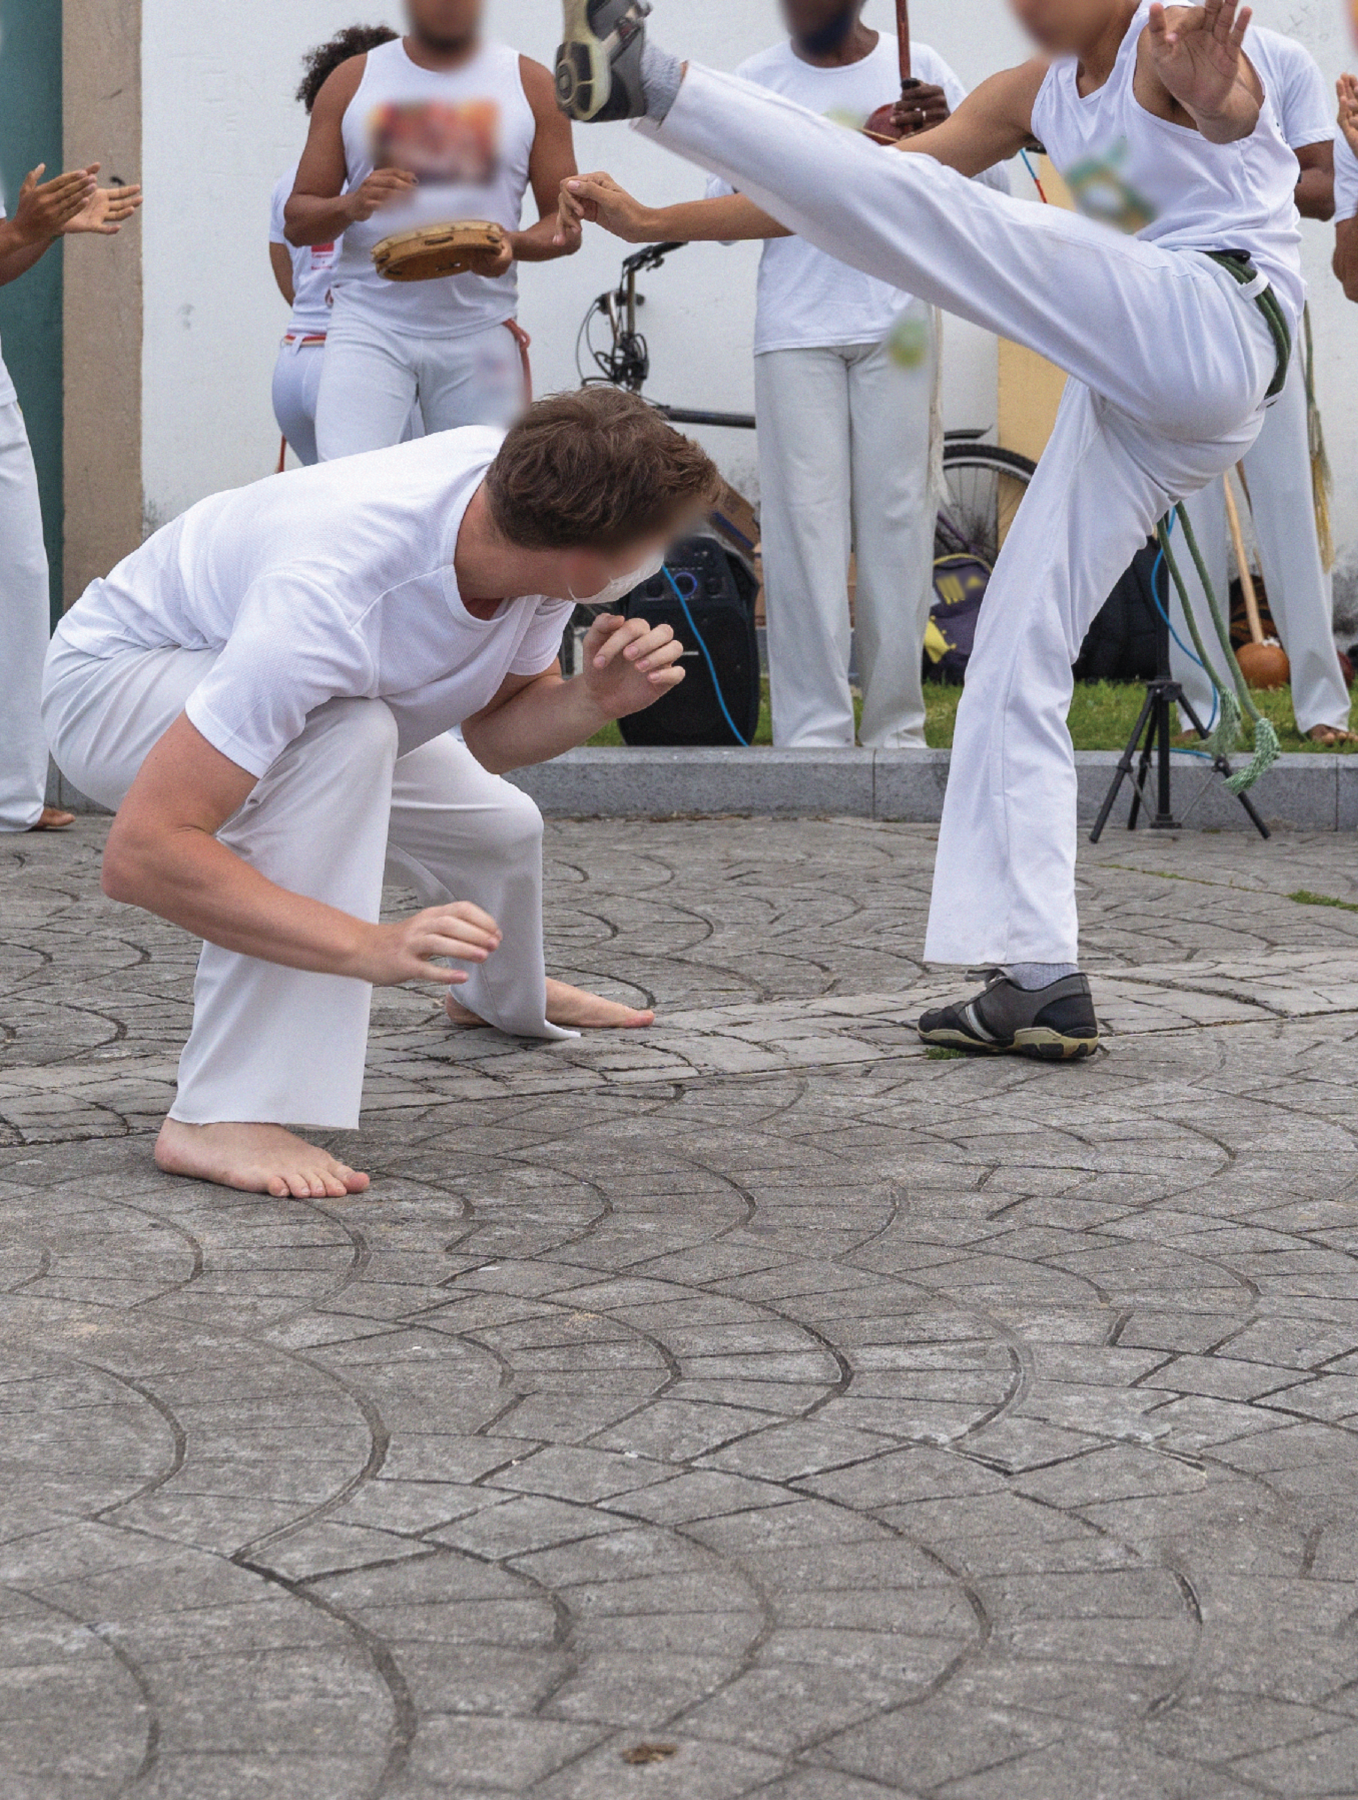 Fotografia. Grupo de pessoas de camisetas e calças brancas jogando capoeira em uma rua.